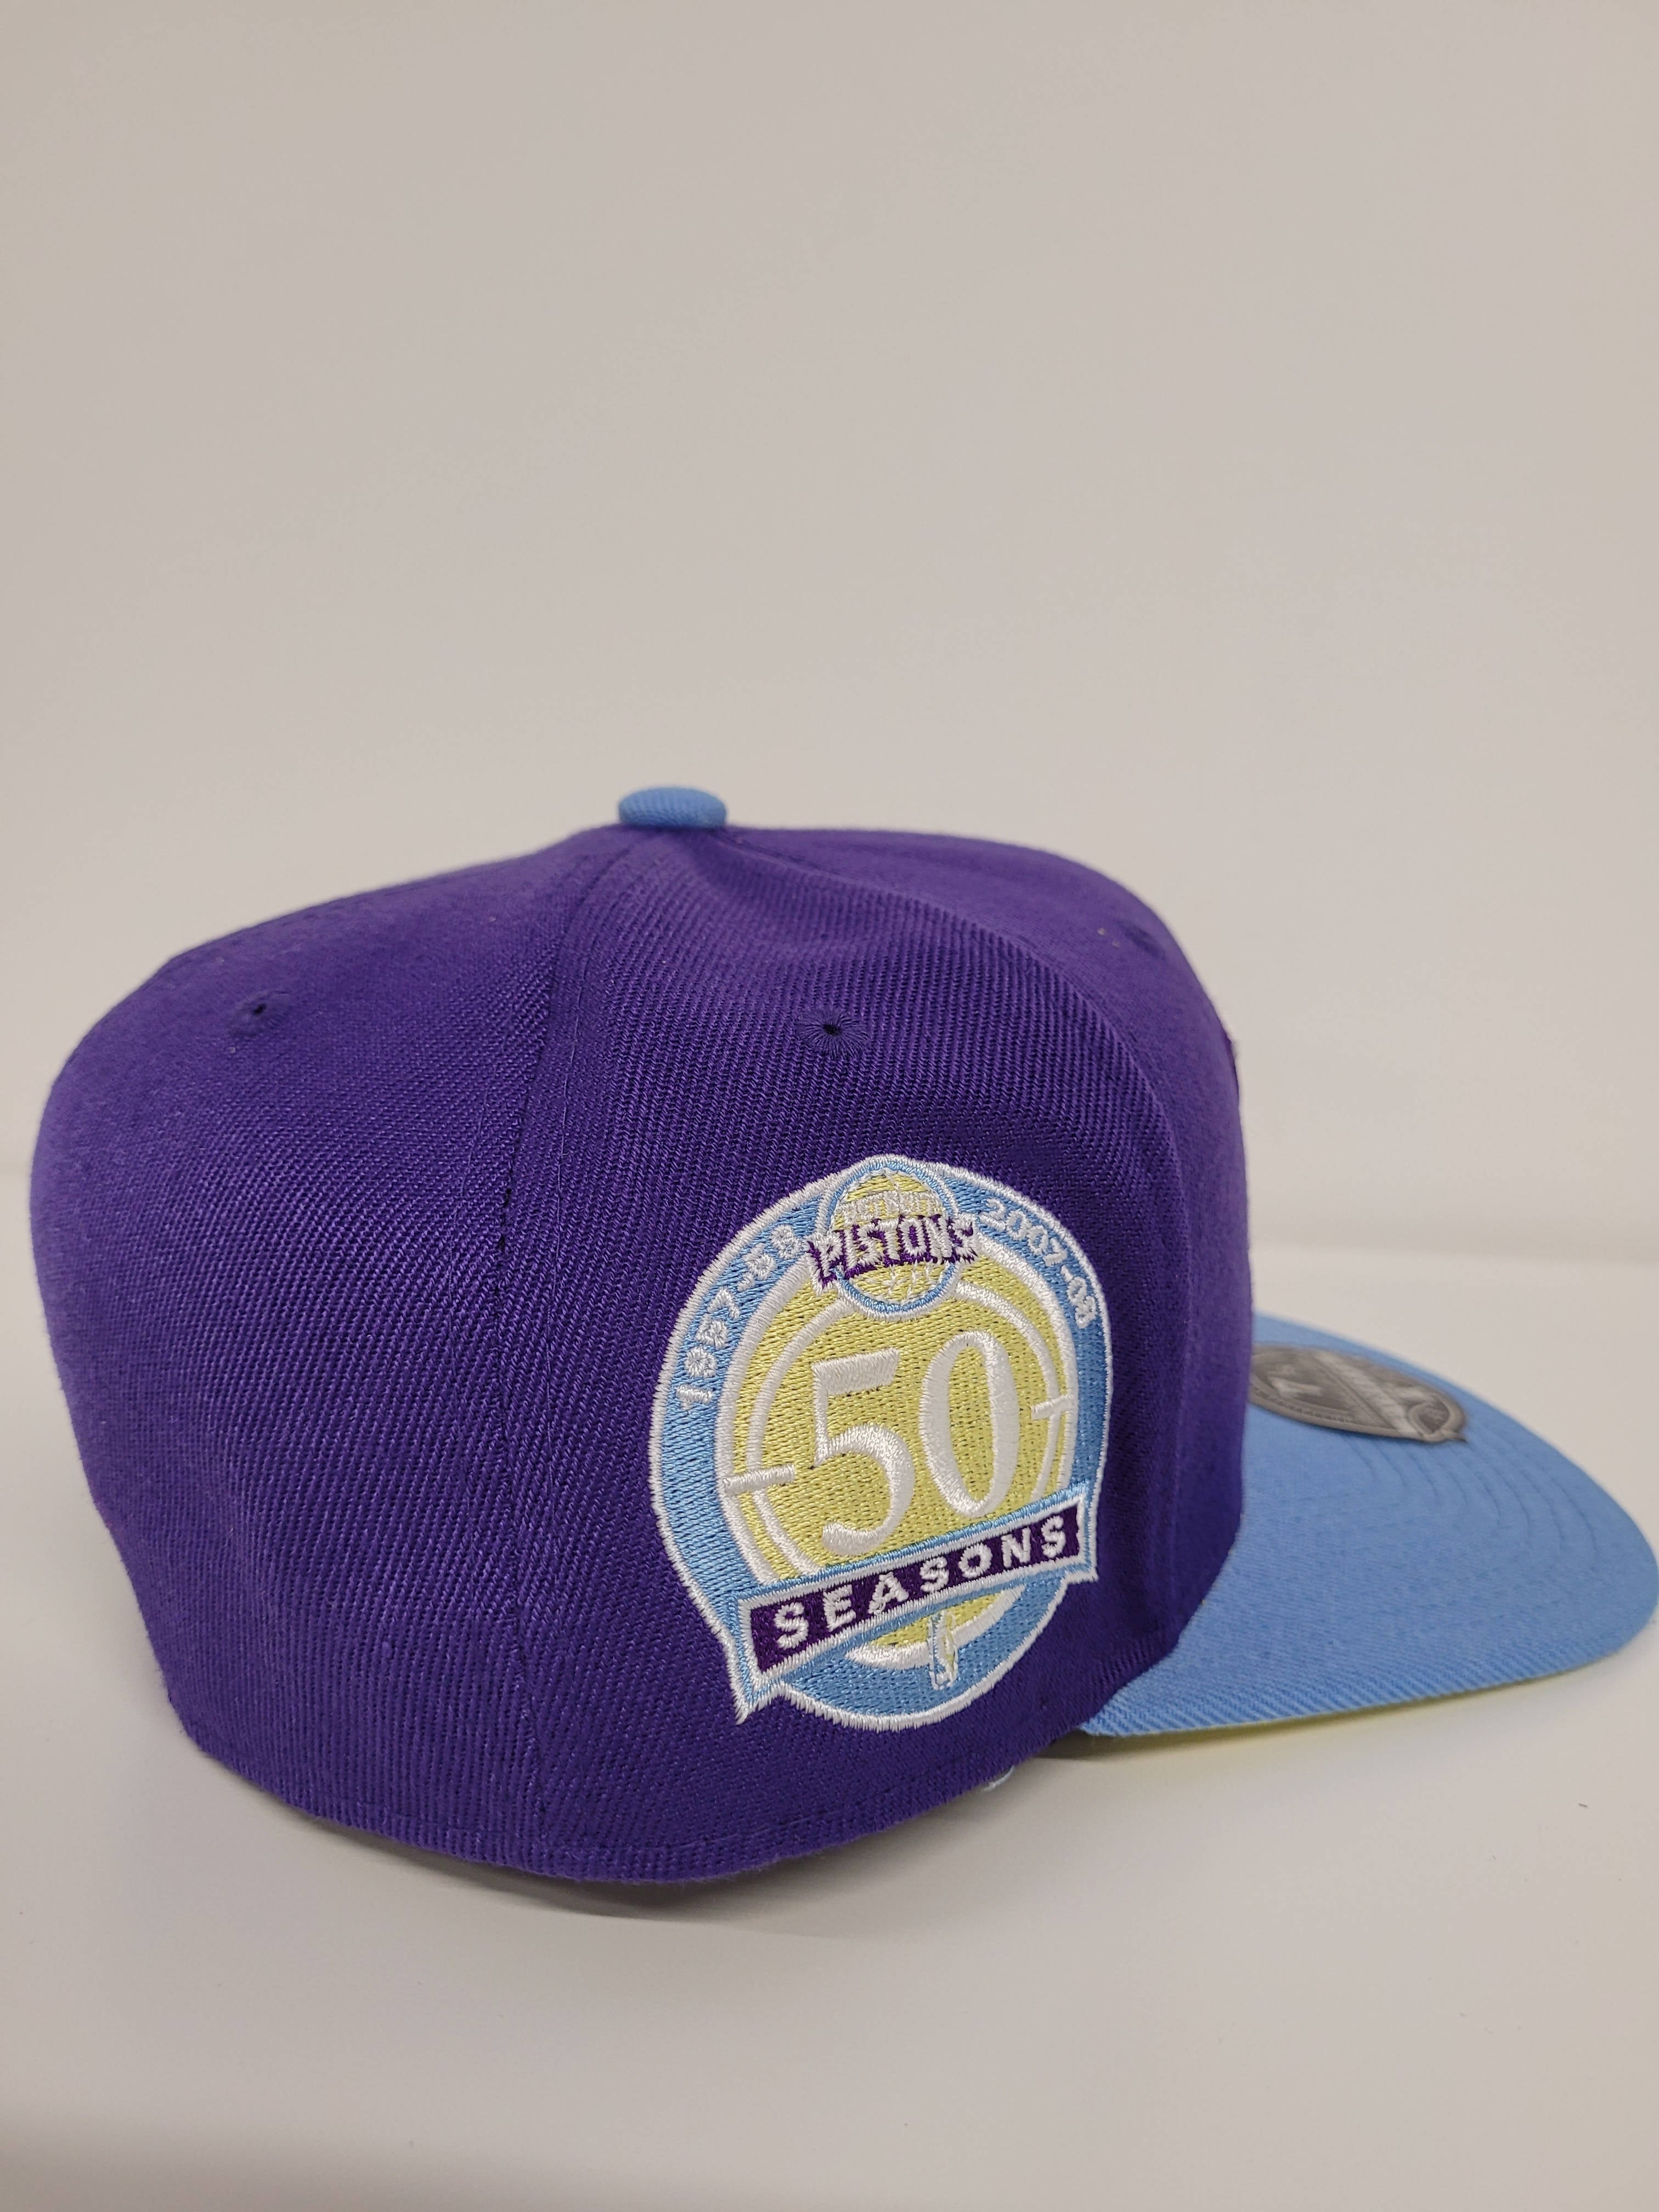 Detroit Pistons Hat, Hats